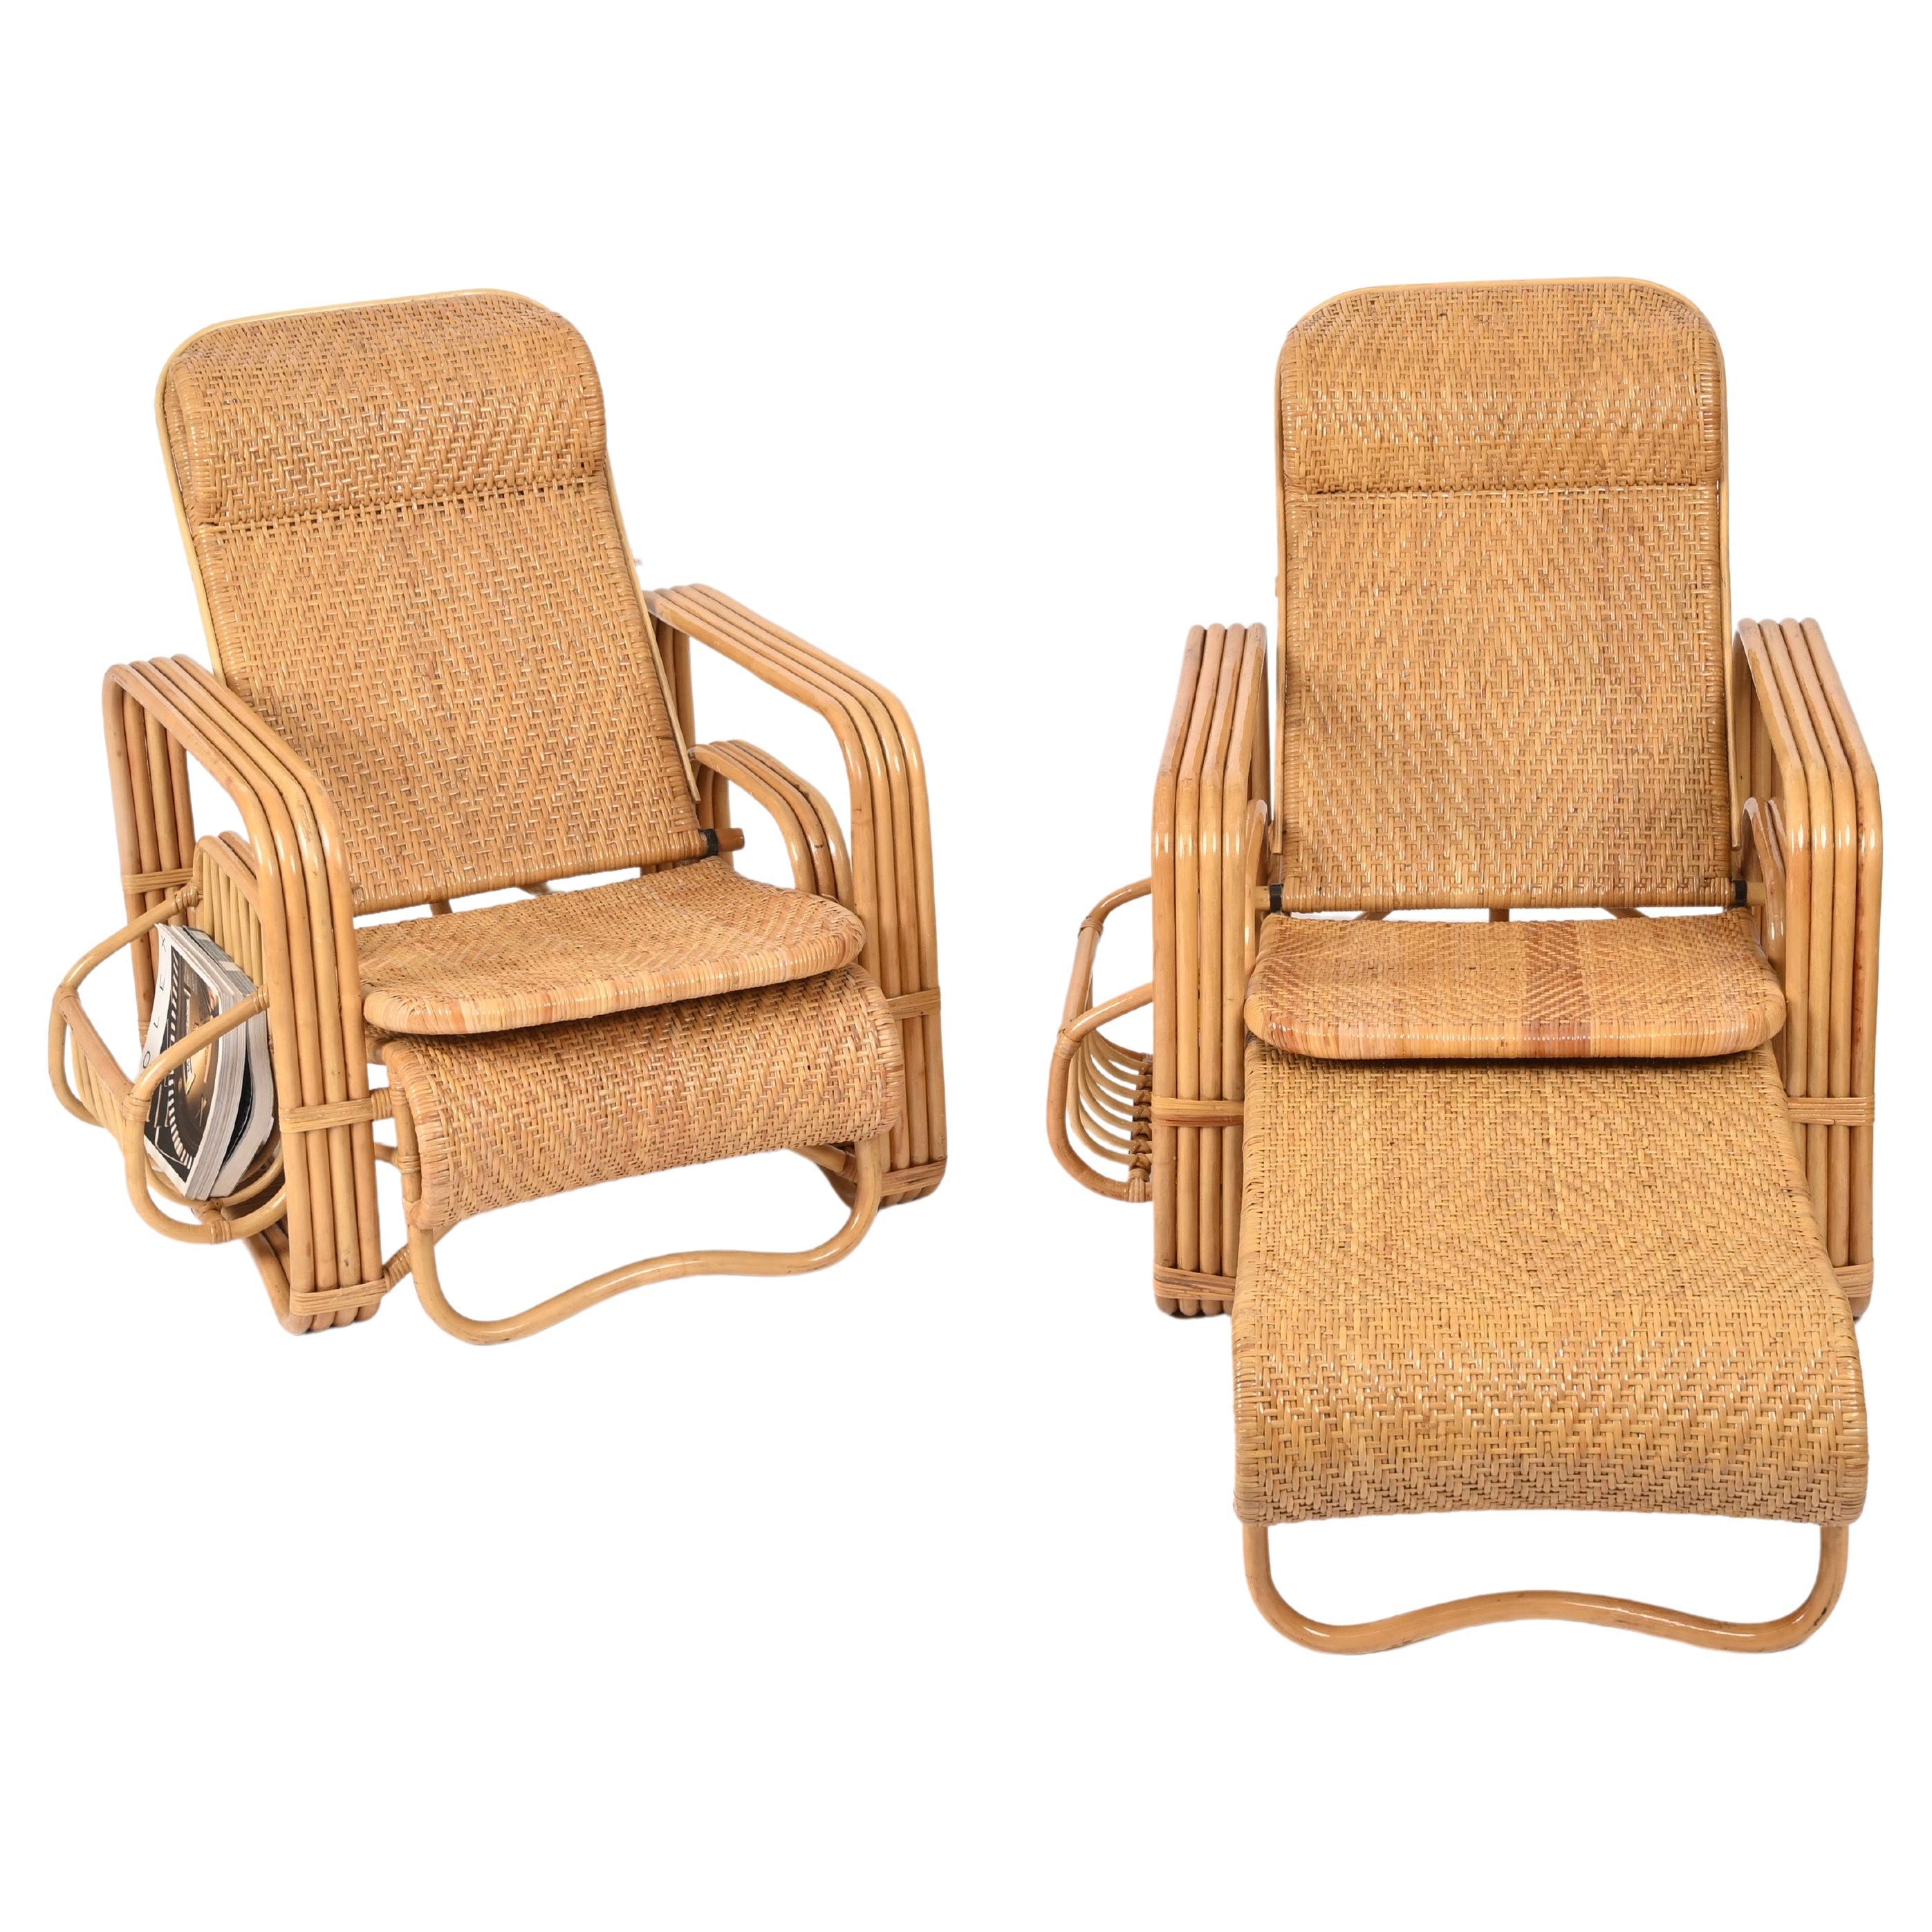 Spectaculaire paire de fauteuils / chaises de salon inclinables entièrement fabriqués en bambou courbé, en rotin et en osier tressé à la main.  Ces magnifiques chaises longues ont été produites en Italie dans les années 1970 et sont attribuées à la